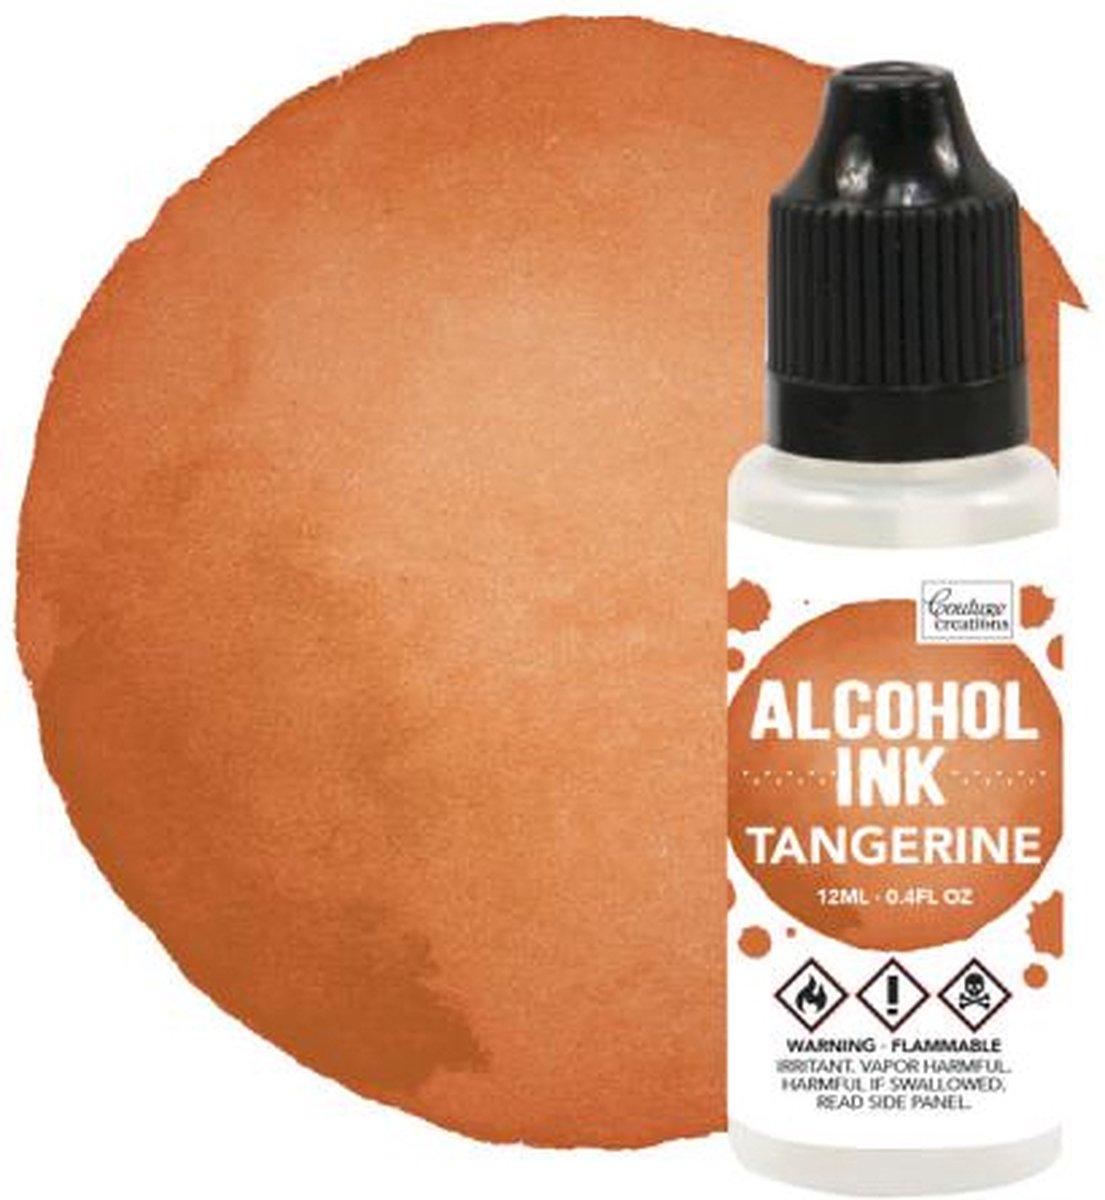 Alcohol Ink Ginger / Tangerine (12mL | 0.4fl oz)